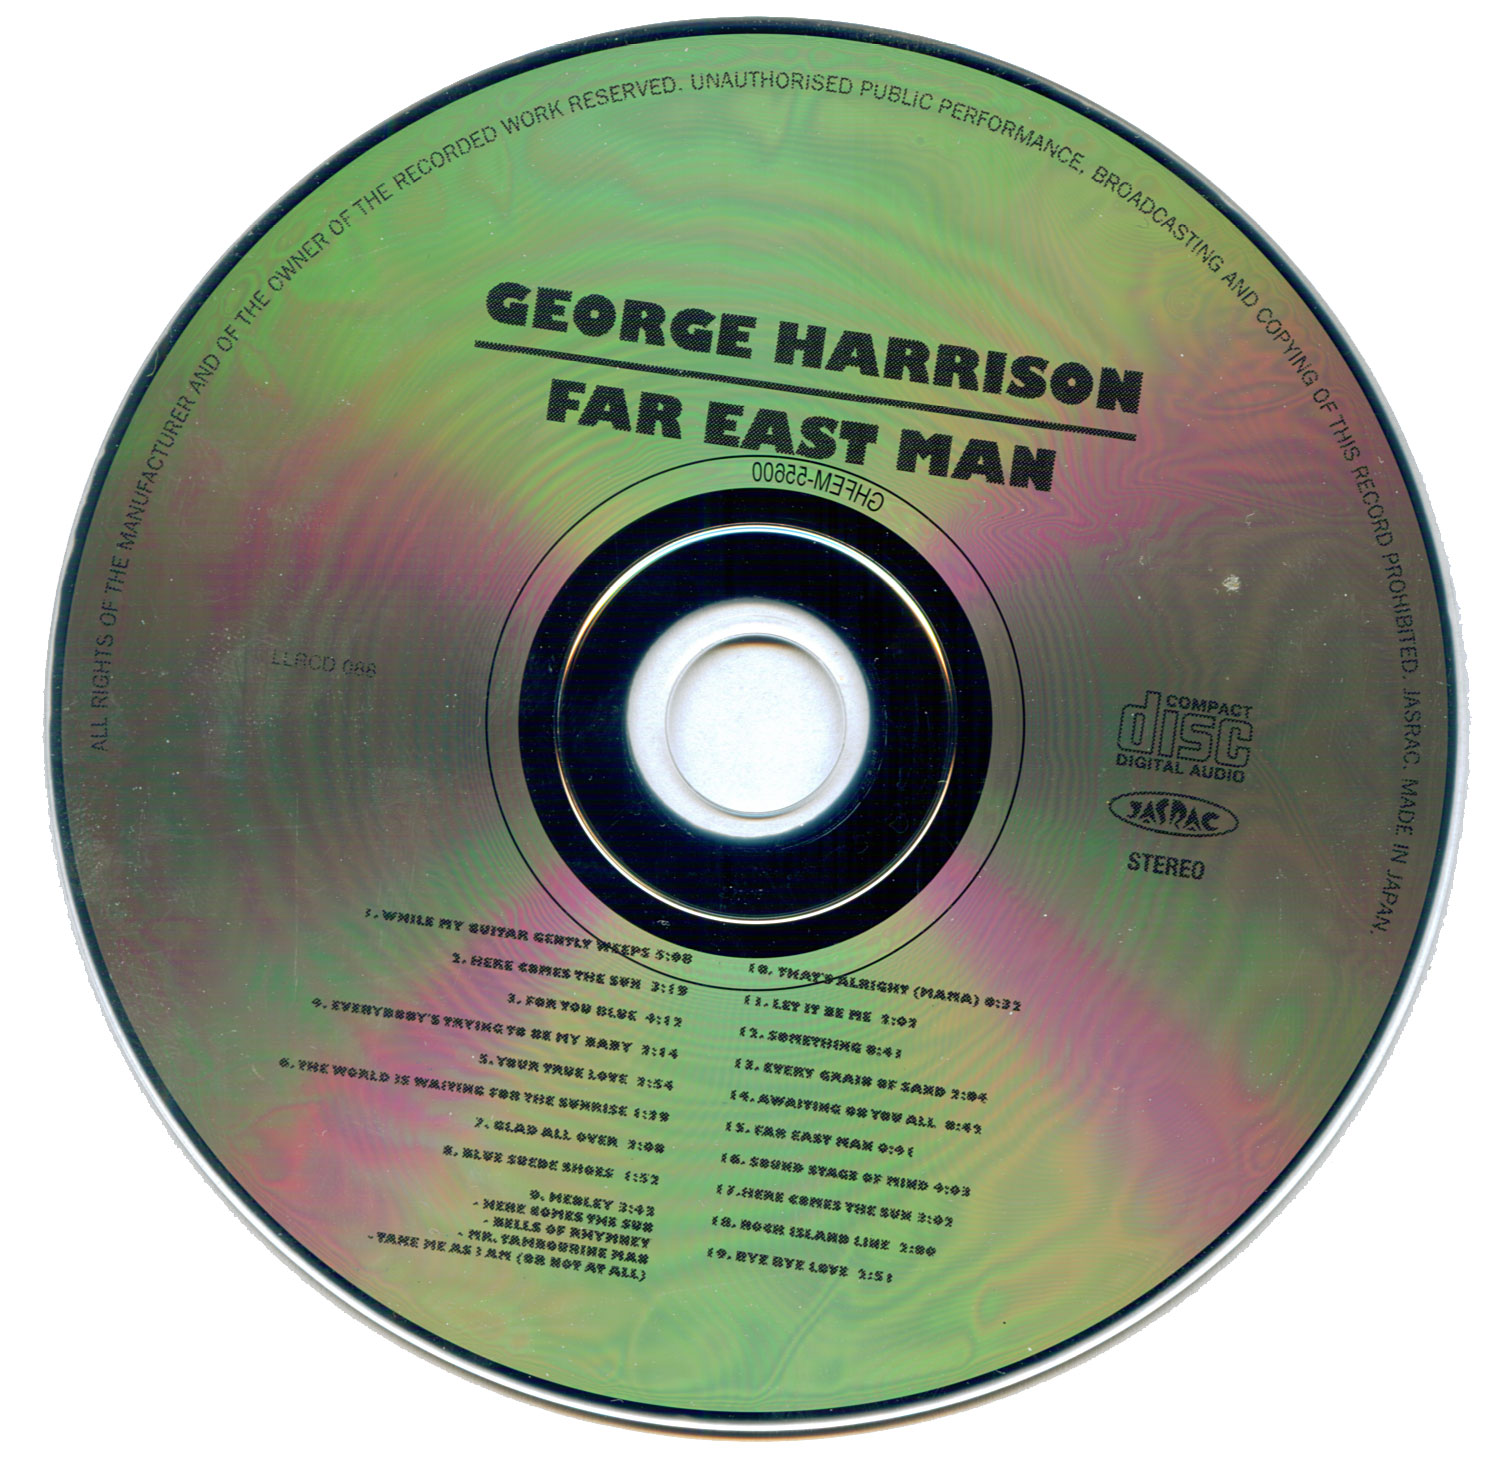 GeorgeHarrison1974-1987FarEastManLiveRarities (6).jpg